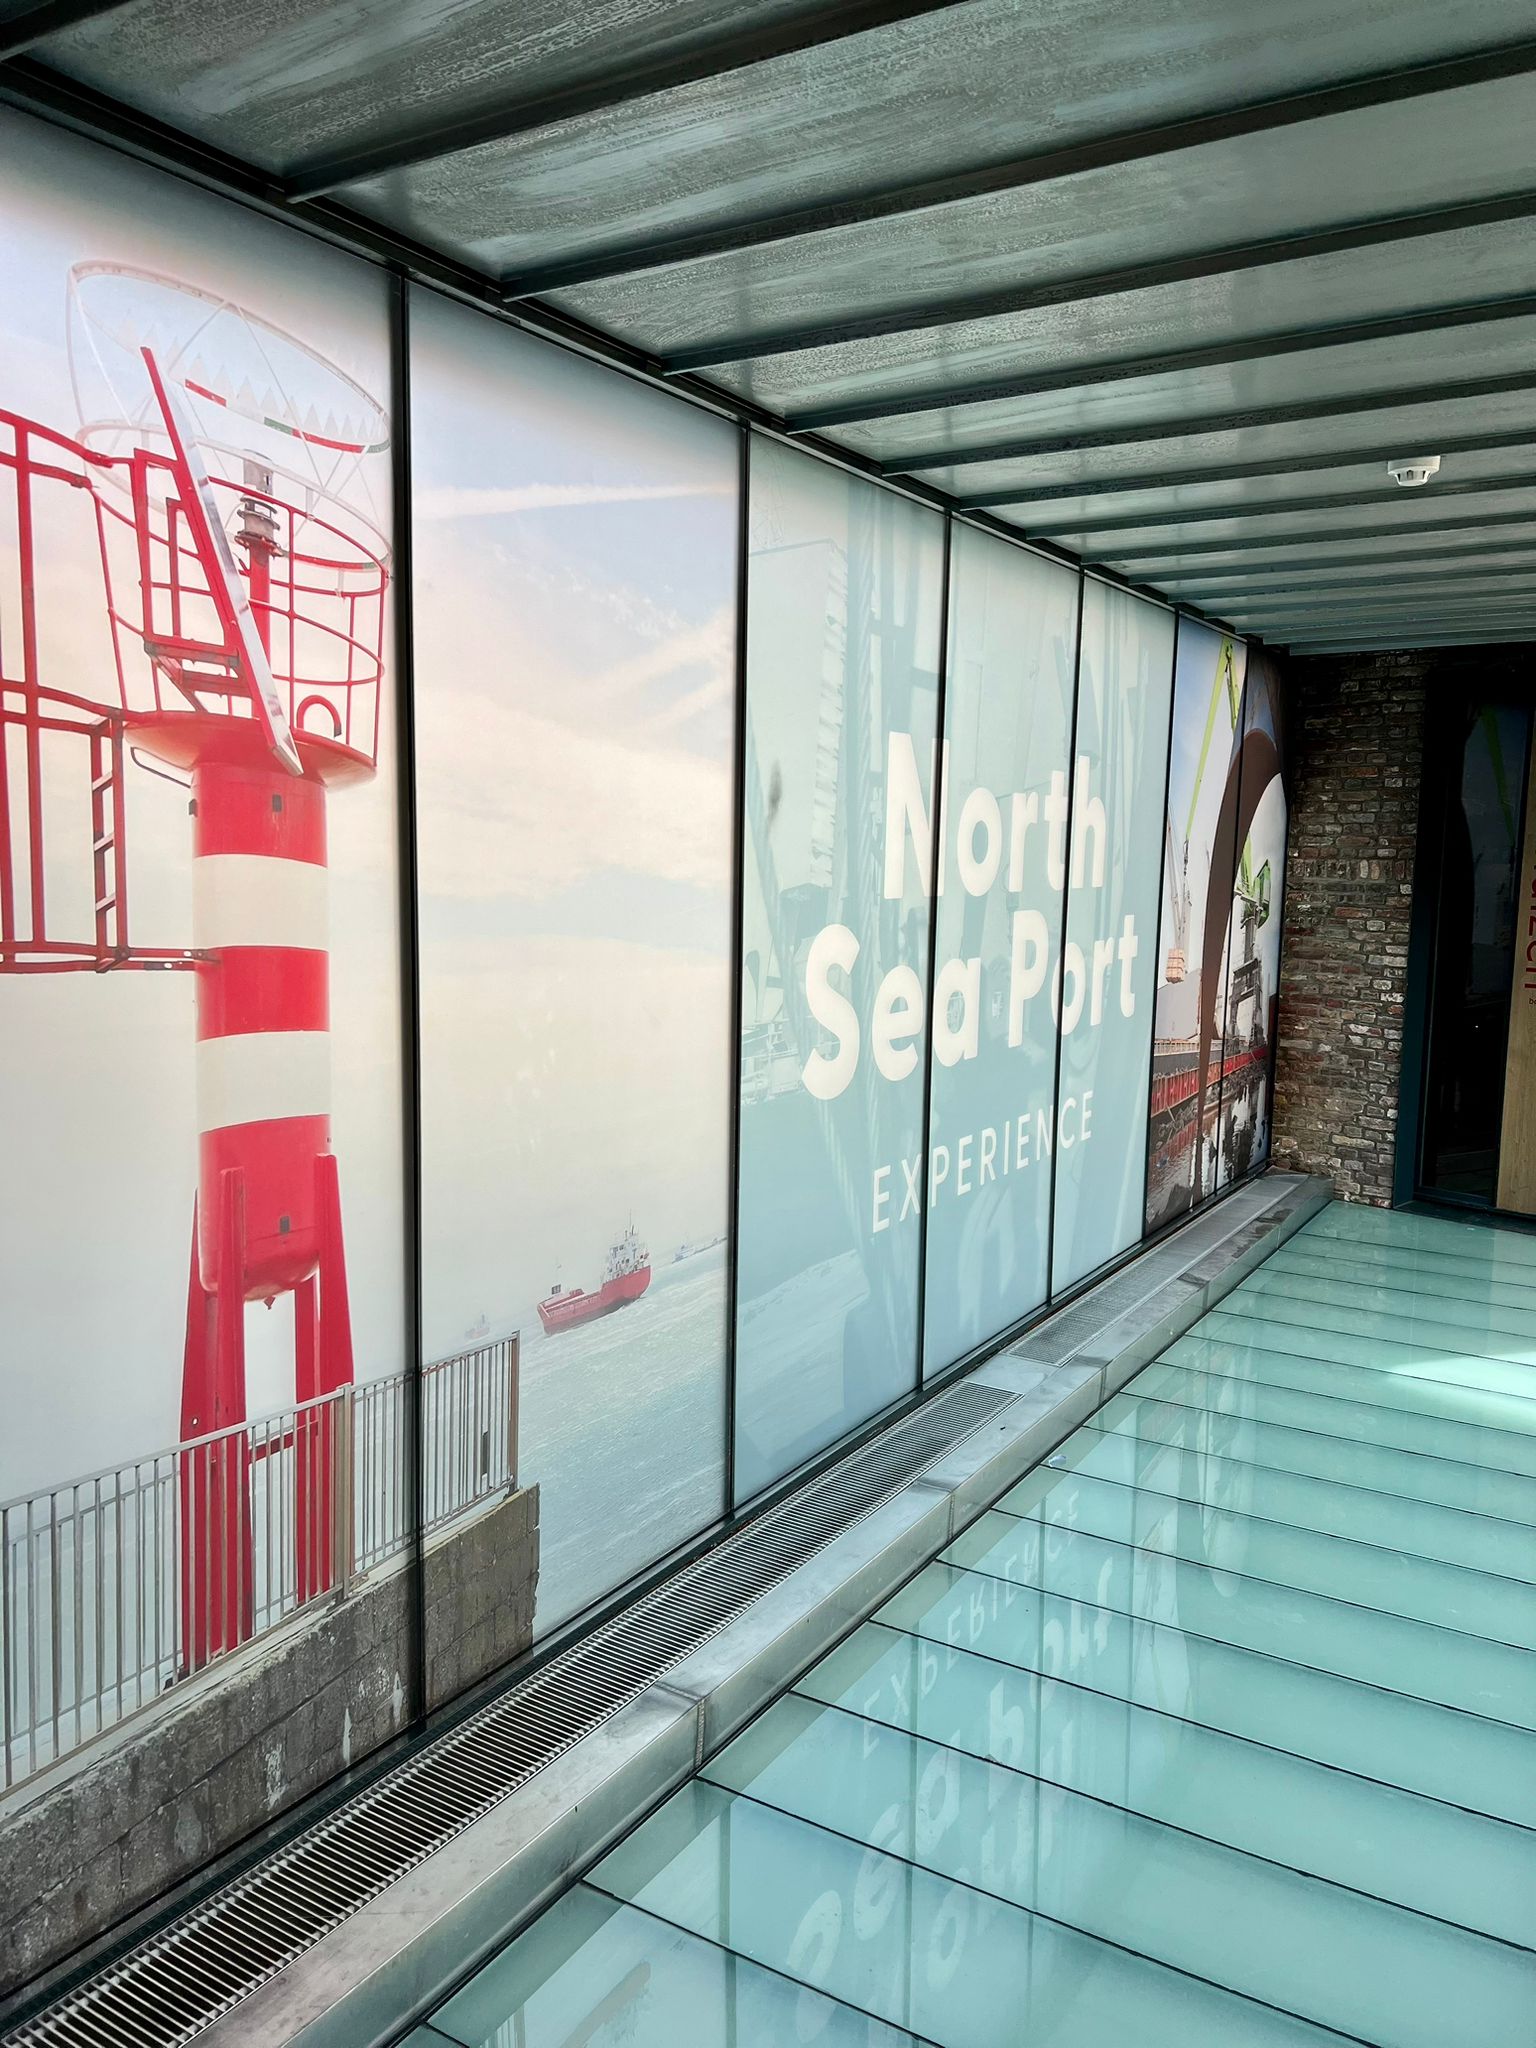 Volledig geprint raamfolie van de north sea port experience bij het muzeeum in vlissingen